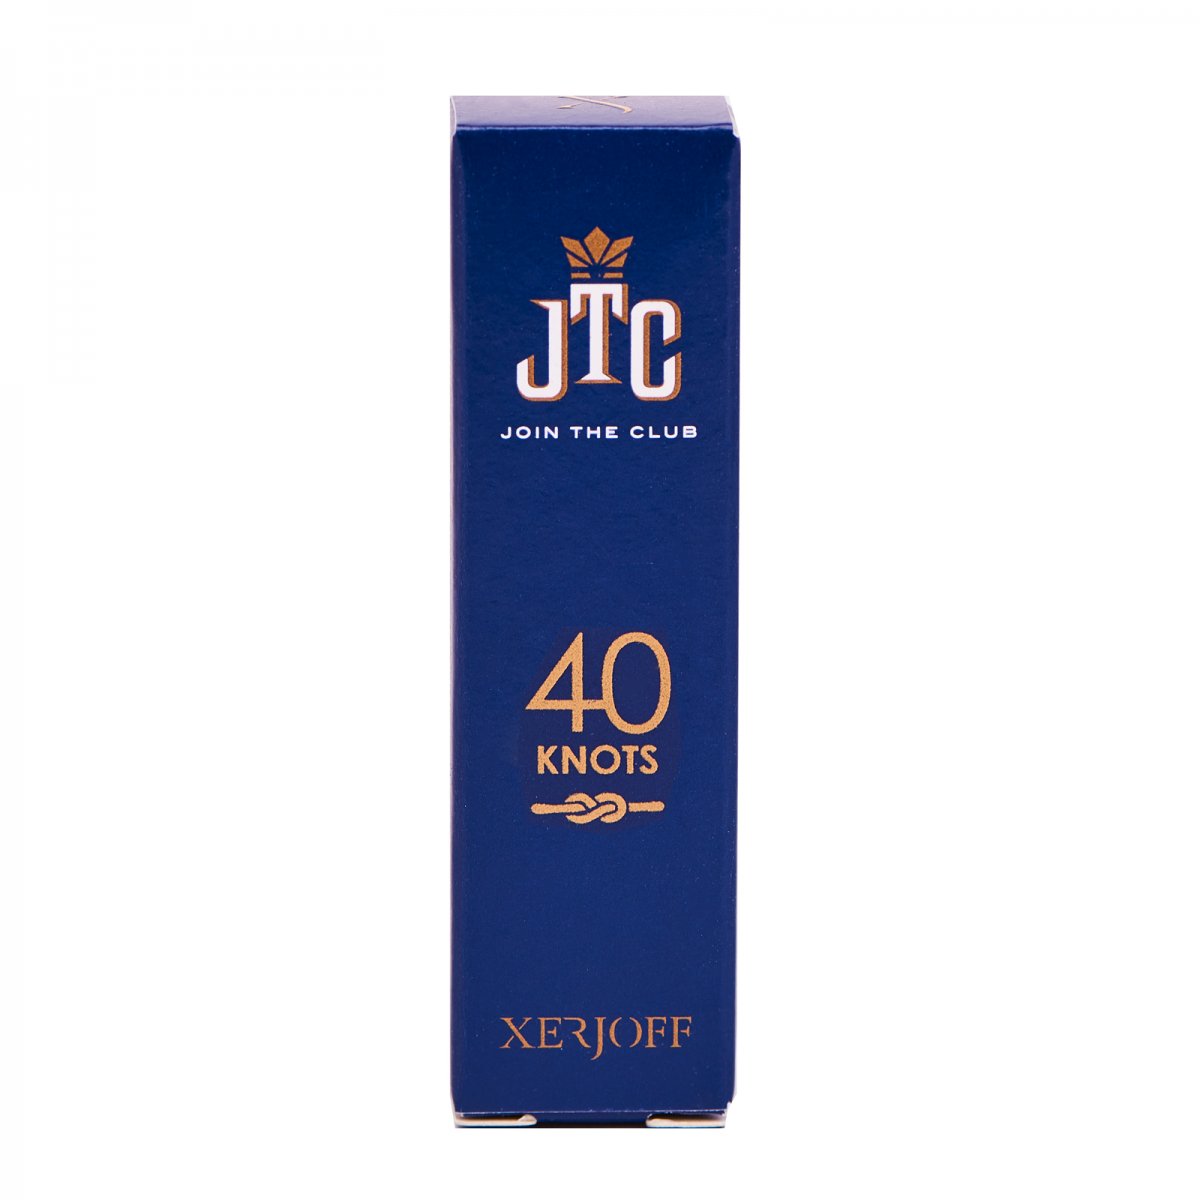 Xerjoff JTC 40 Knots Parfümproben (2 ml) von Xerjoff